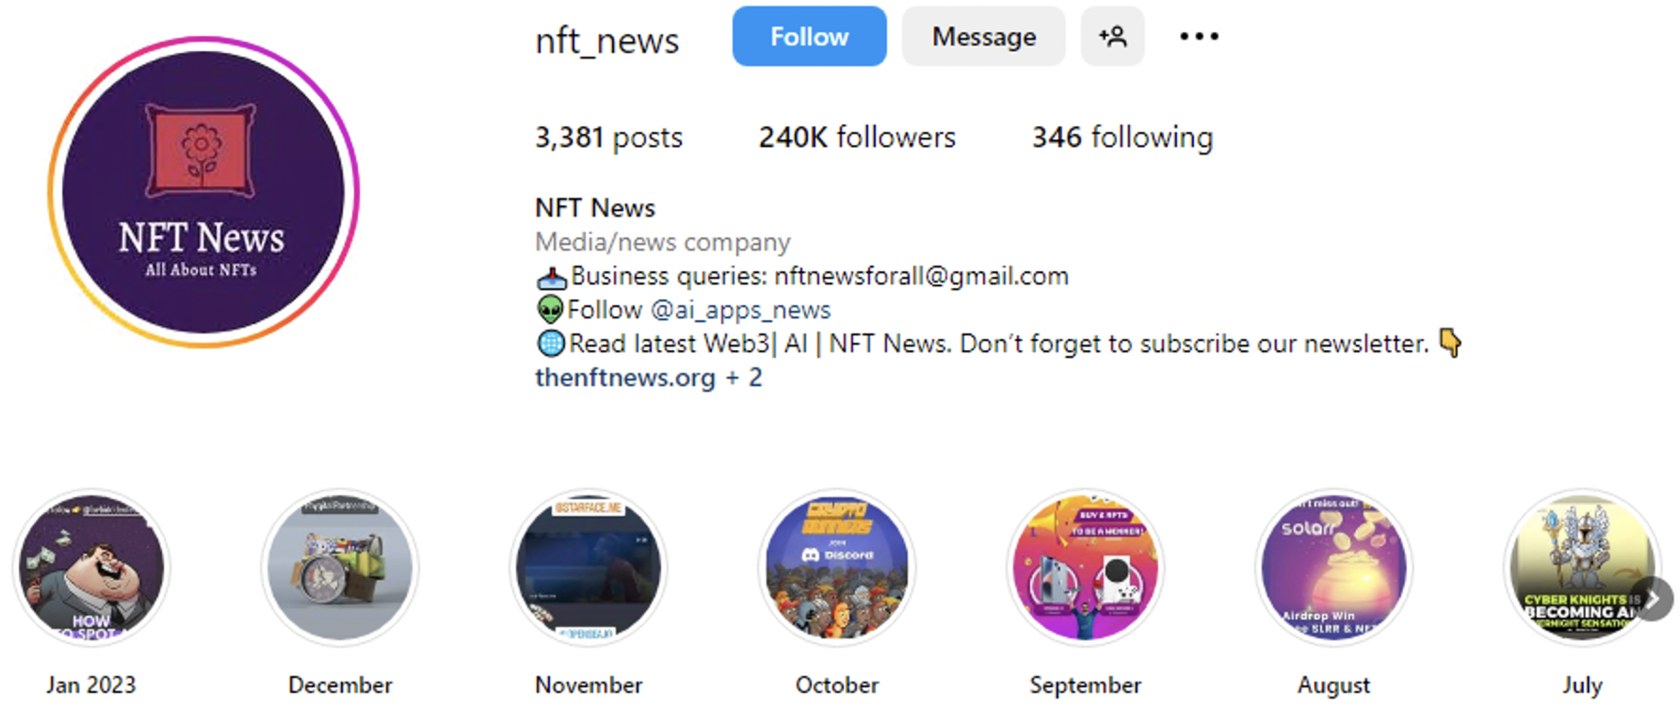 NFT NEWS